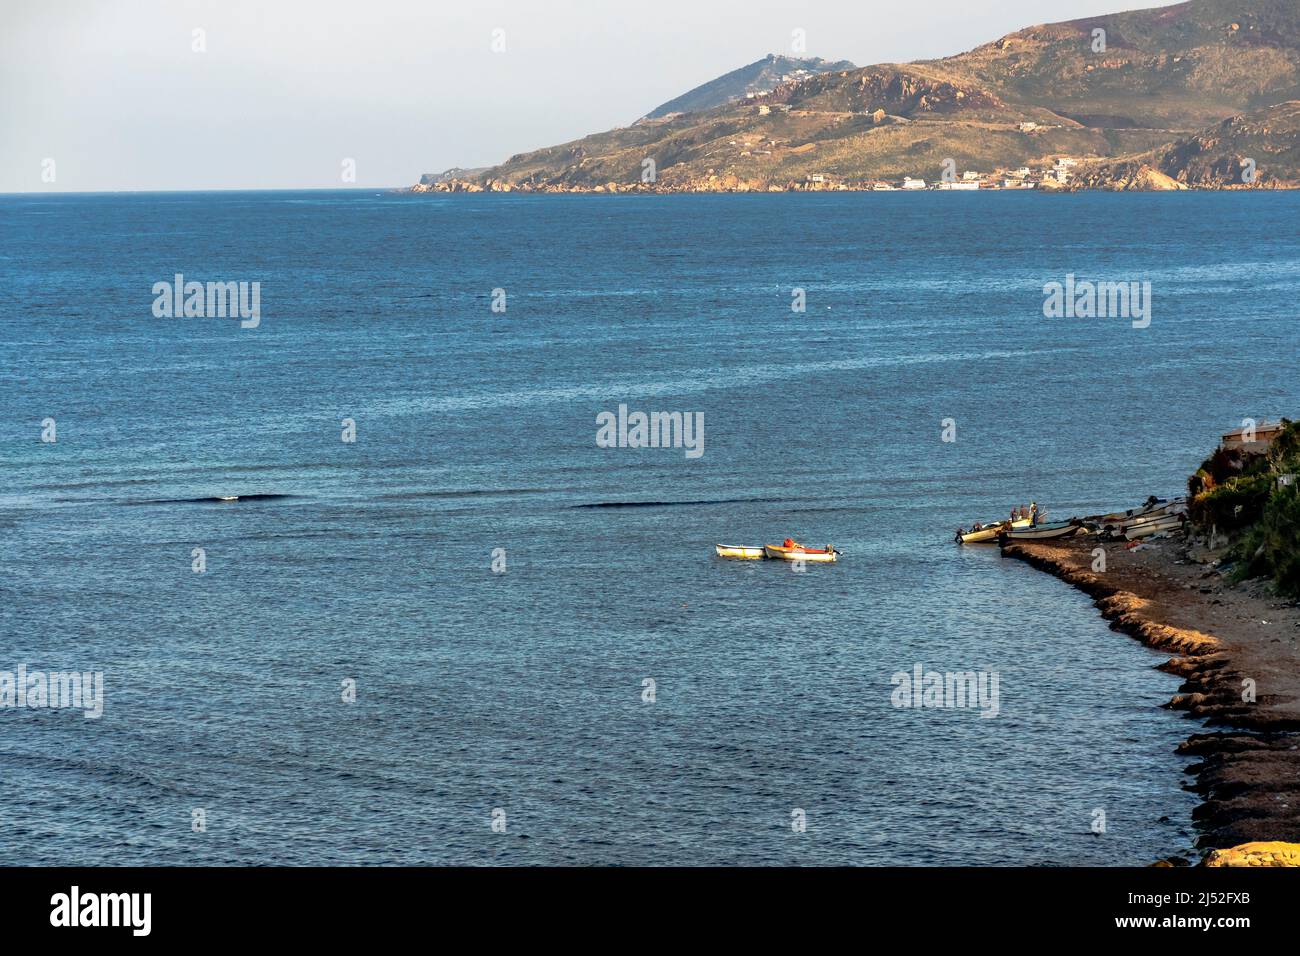 Bateaux de pêche sur la côte bleue de la mer méditerranée. Côte montagne de Tizi Ouzzou . Algérie. Banque D'Images